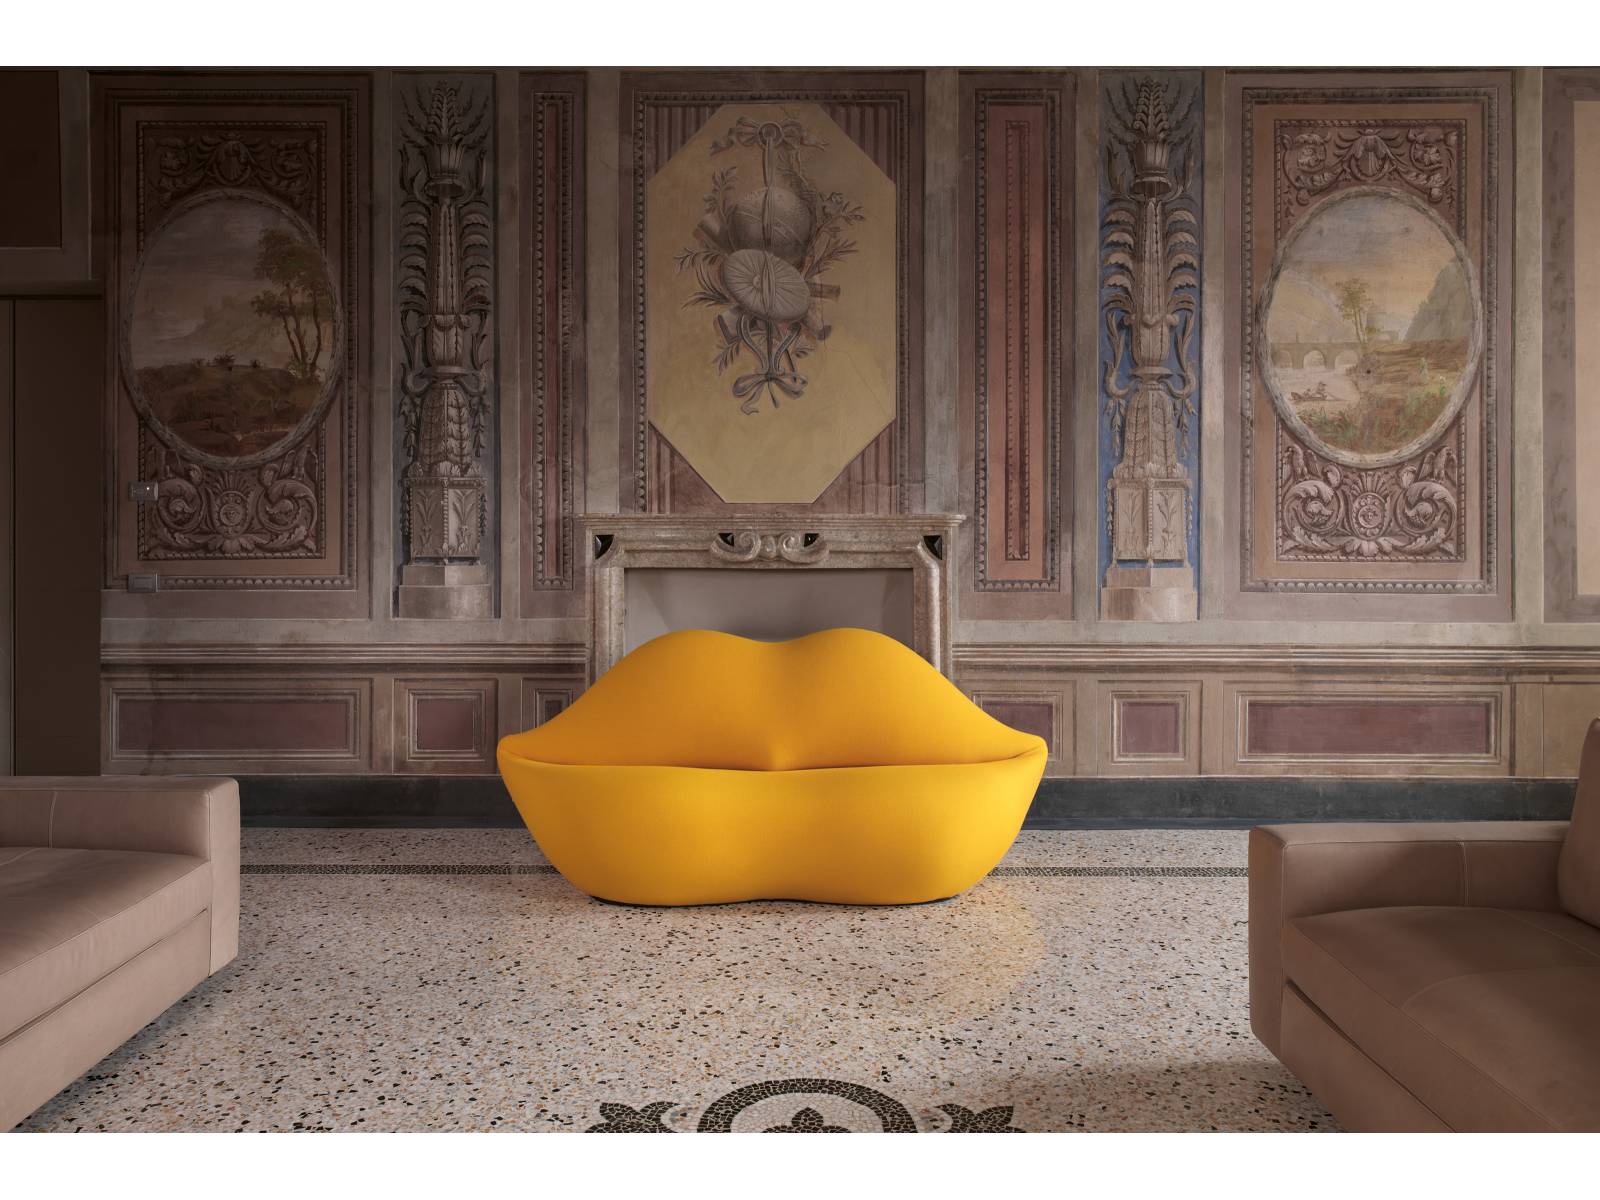 Anlässlich seines 50-jährigen Jubiläums feiert der Möbelhersteller sein kultigstes Sofa mit einer unbegrenzten Auflage in 25 neuen Farben, die der Designikone, welche im wahrsten Sinne des Wortes schon in aller Munde war, einen neuen Look verleihen. «Bocca» wurde bereits 1970 von Studio 65 entworfen und erfreut sich noch heute grosser Beliebtheit. Gufram.